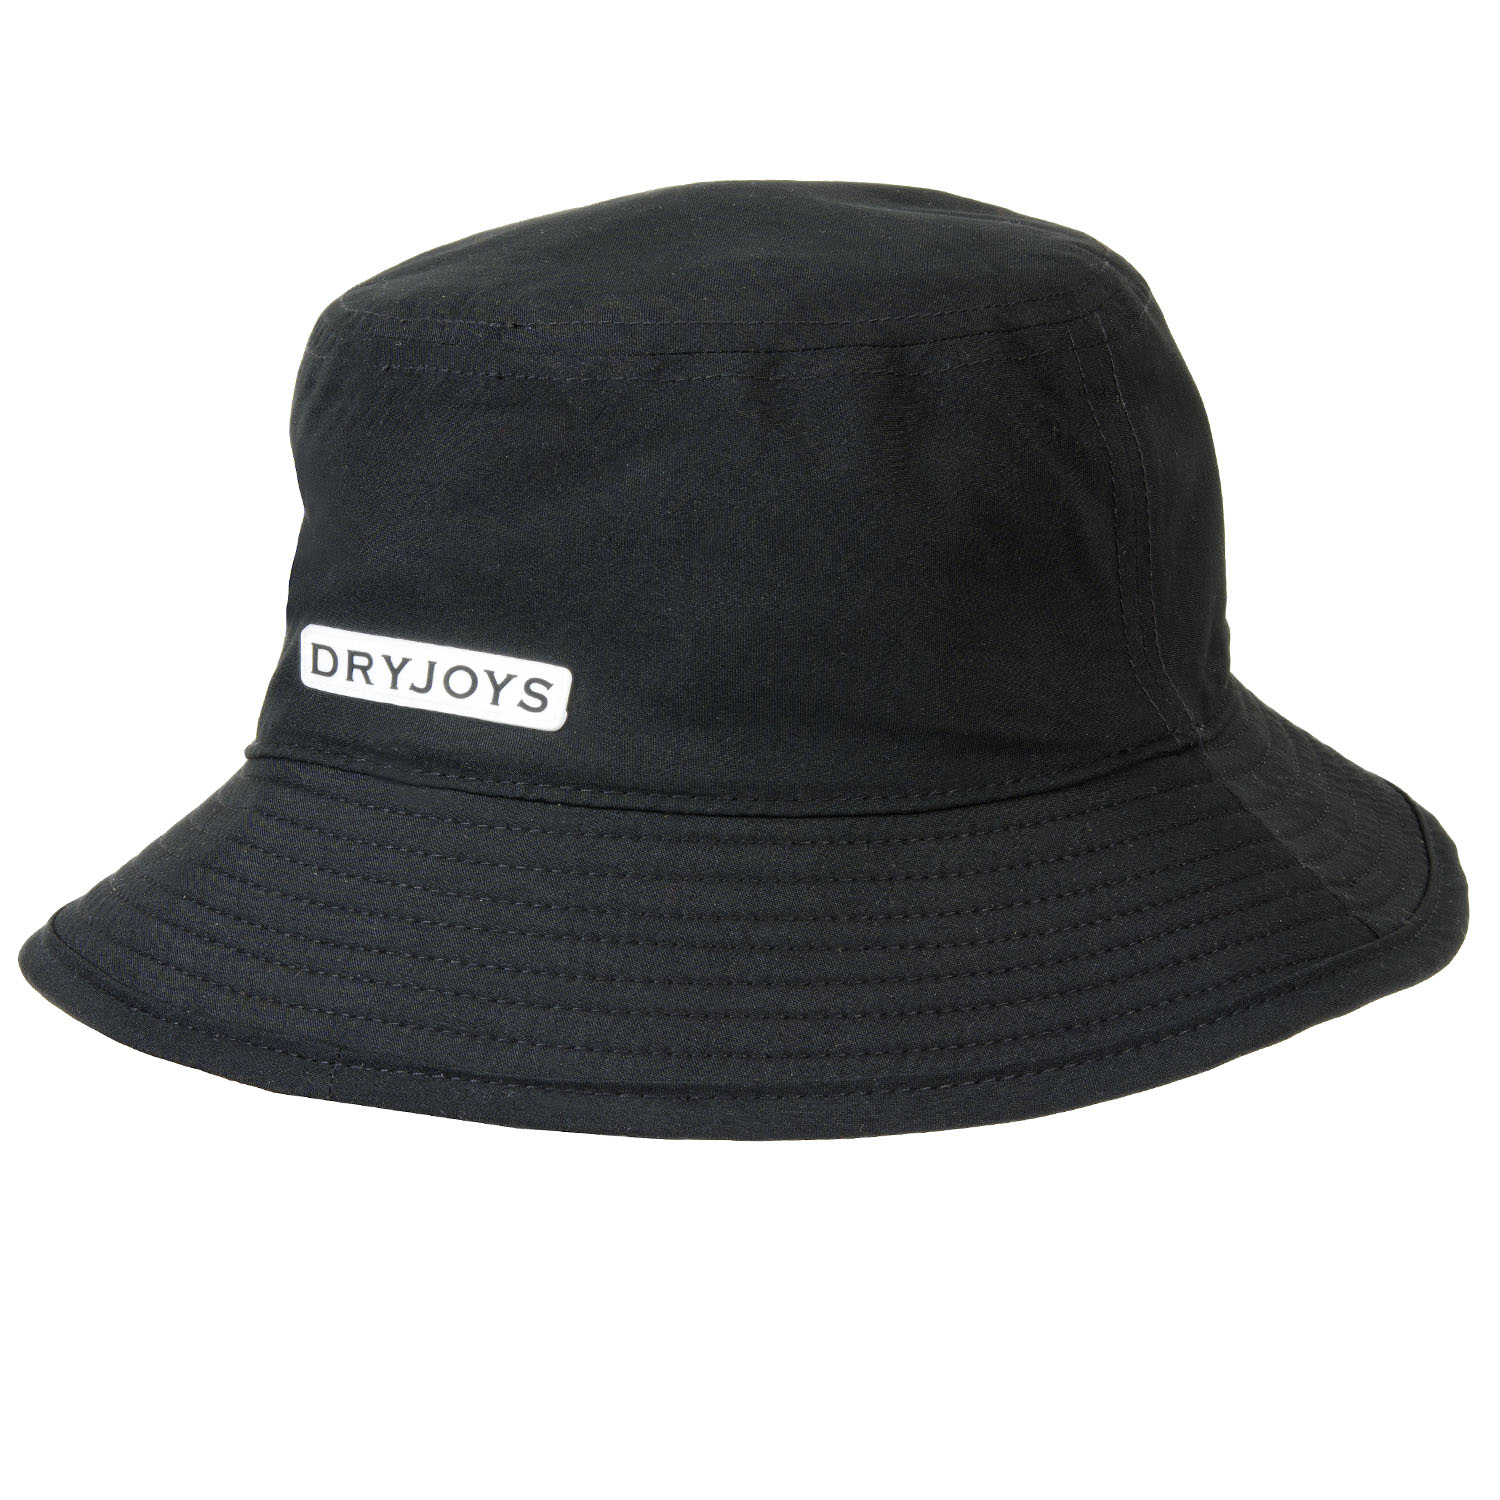 FootJoy DRYJOYS Bucket Hat Black | Scottsdale Golf